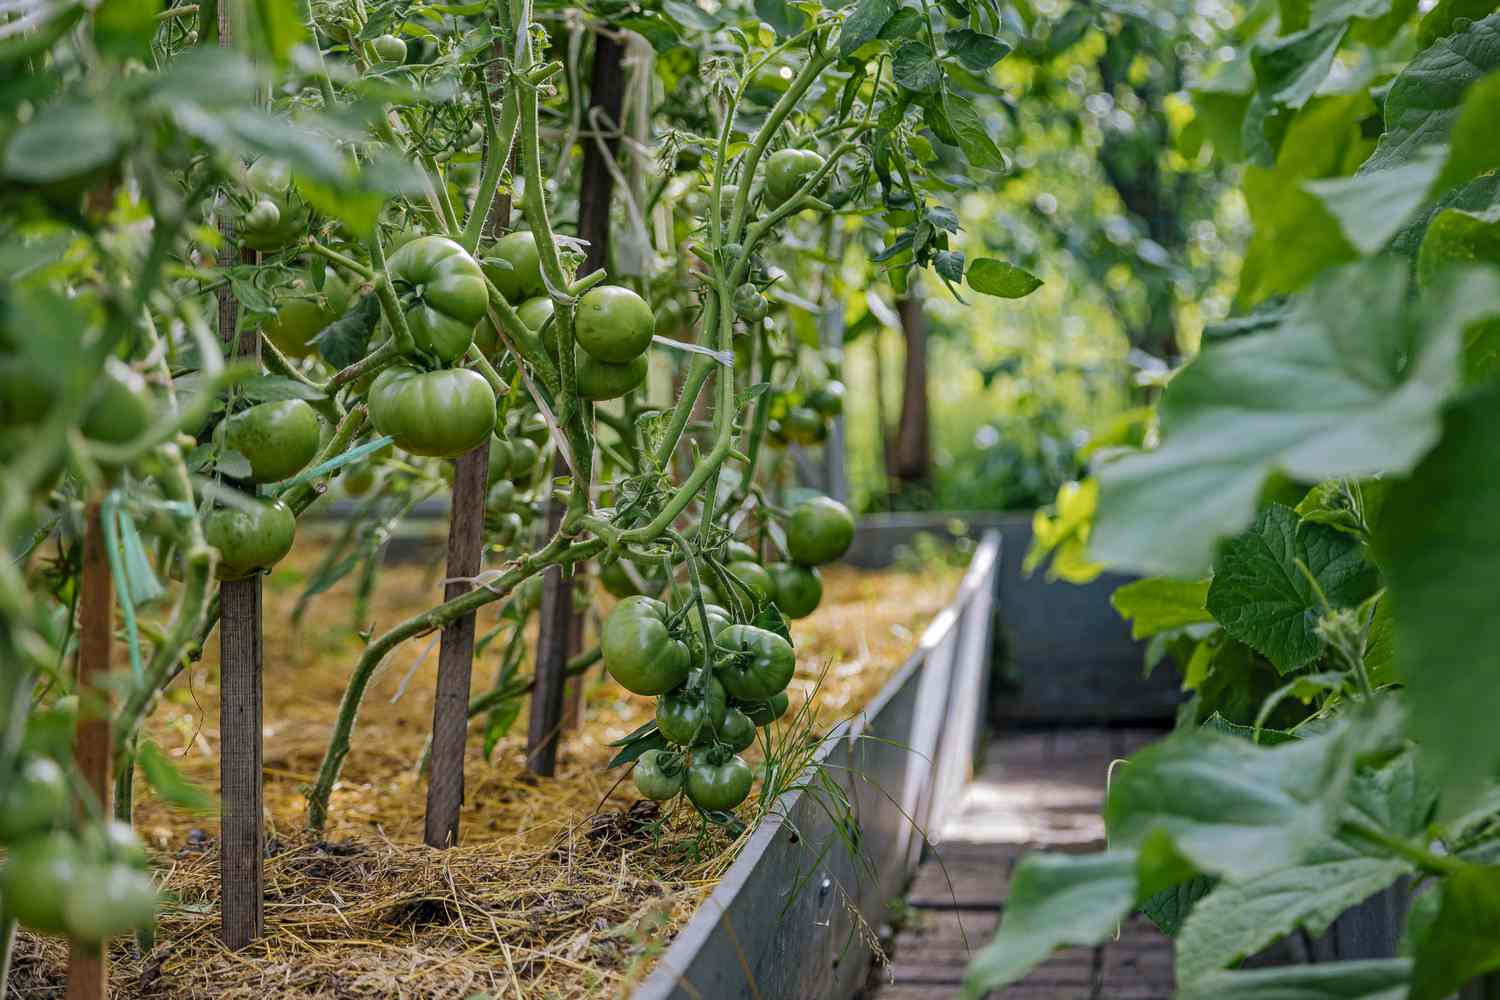 Depois dos tomates, nenhum membro da família das beladonas deve ser cultivado nesse canteiro por pelo menos um ano